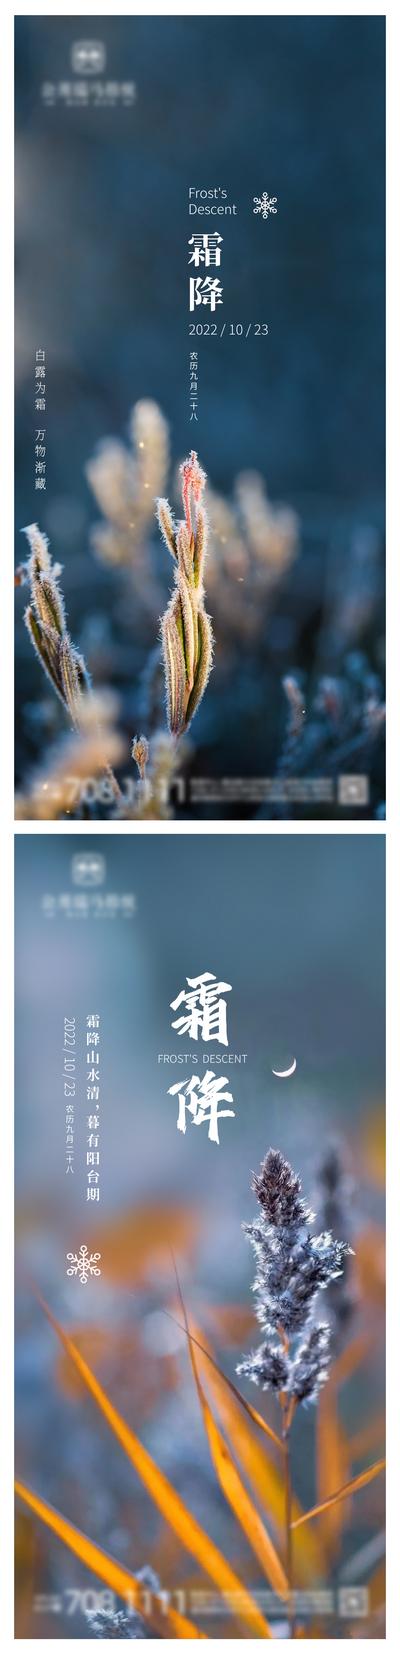 南门网 广告 海报 地产 霜降 节气 简约 系列